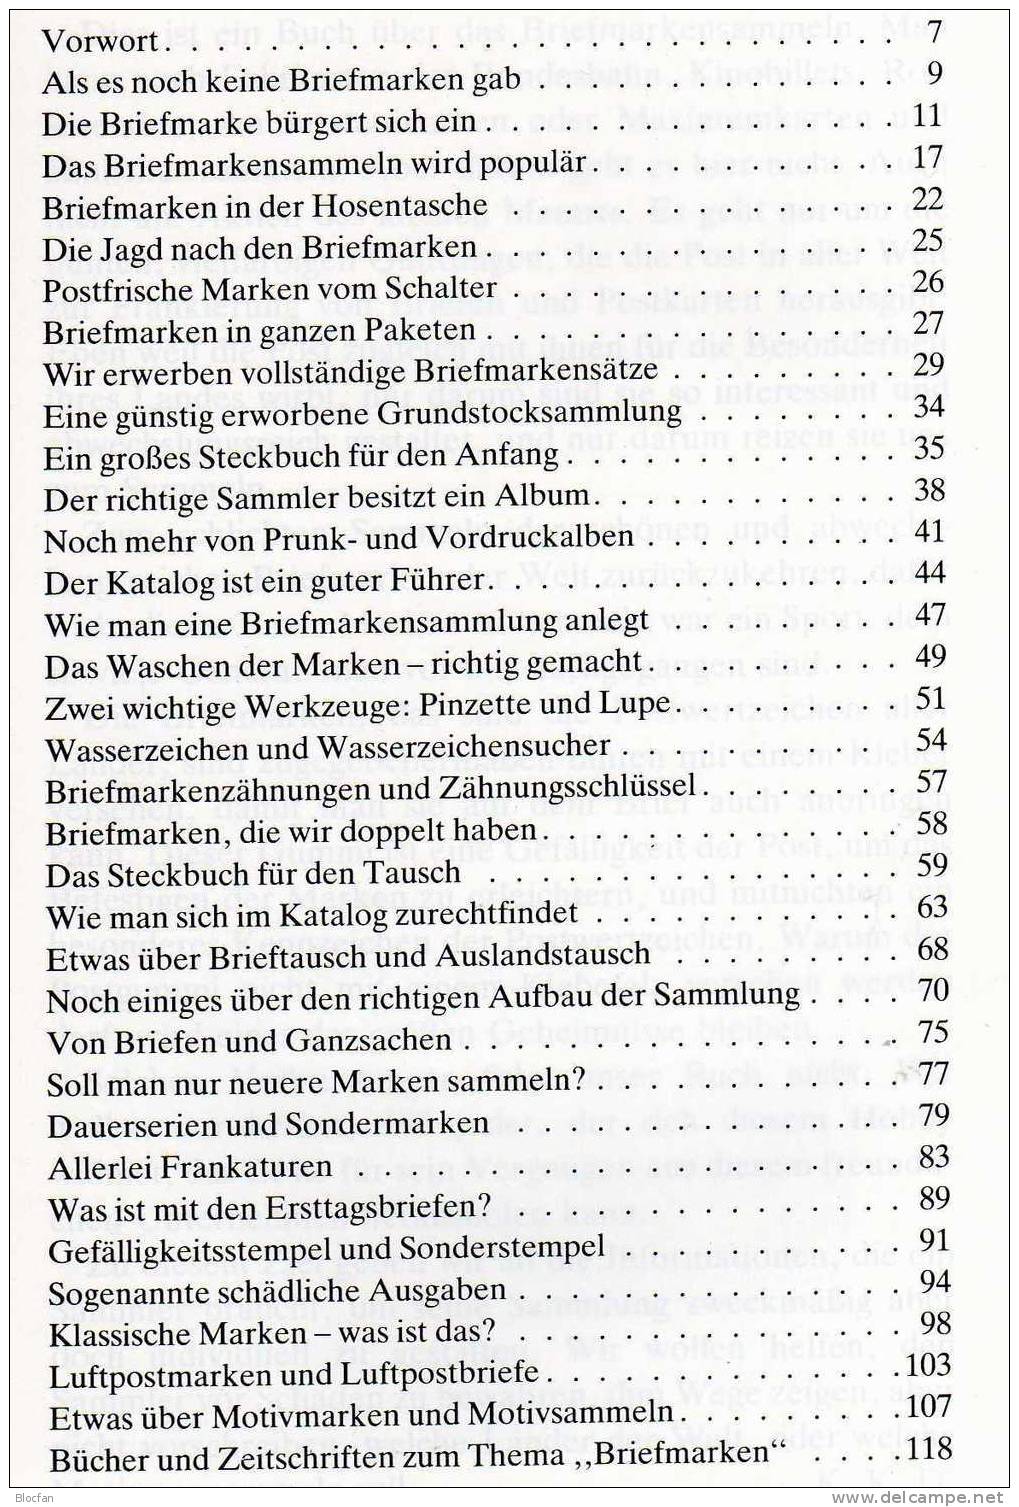 Handbuch Für Den Briefmarkensammler 1990 Neu 5€ Mit Motivbeschreibungen Zahlreiche Bilder Anleitung Für Sammler Der Welt - Ed. Originales